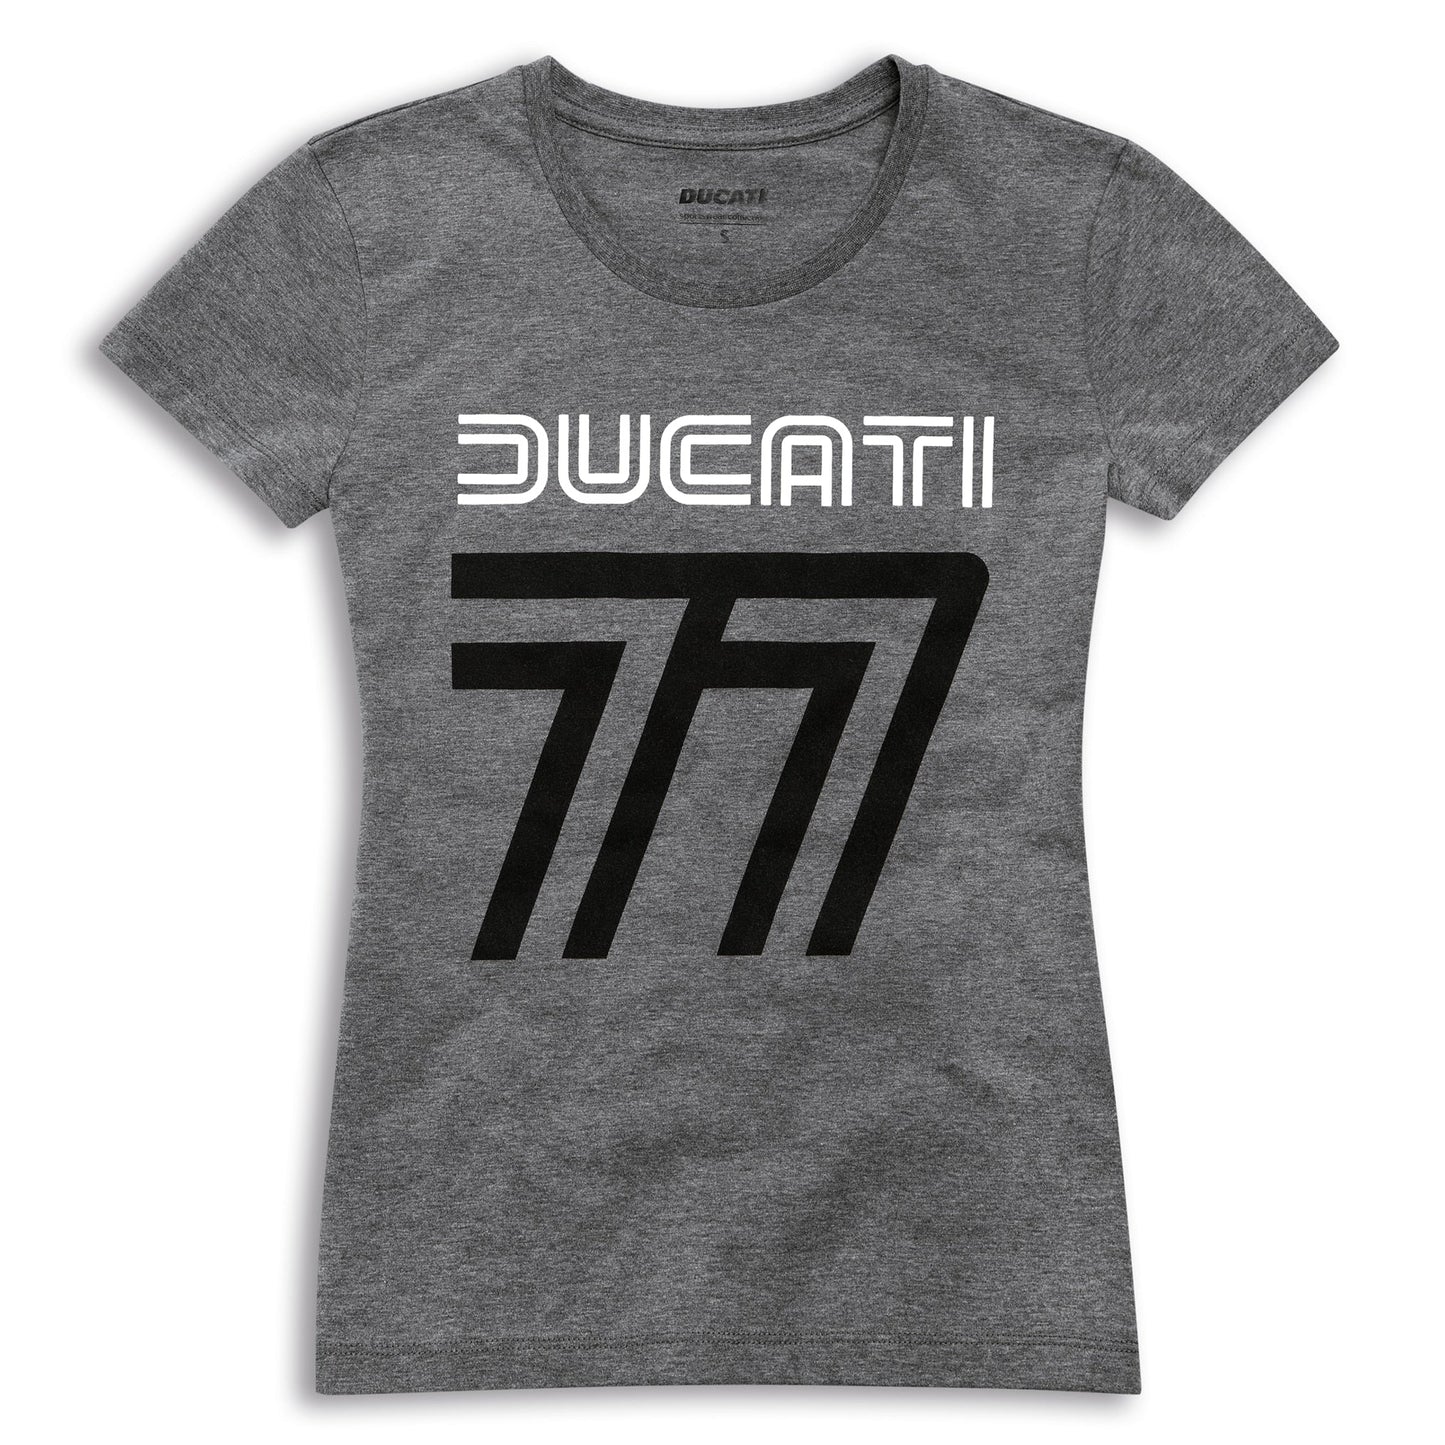 Ducati 77 Women's T-Shirt